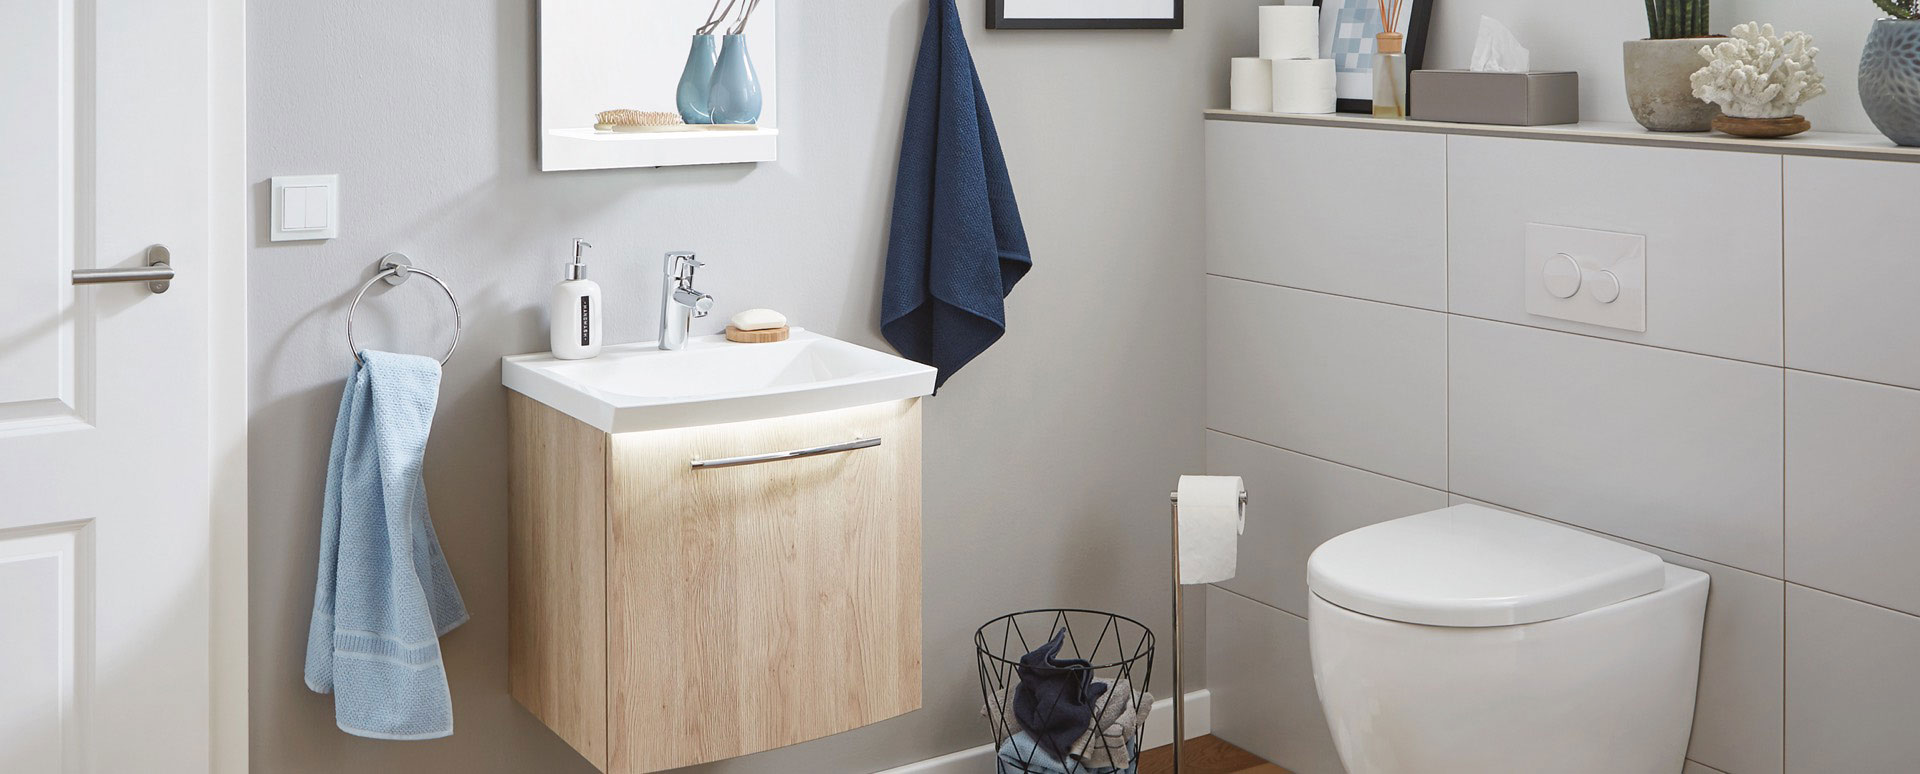 mijn bad in stijl compact en compleet compacte badkamer wit met hout